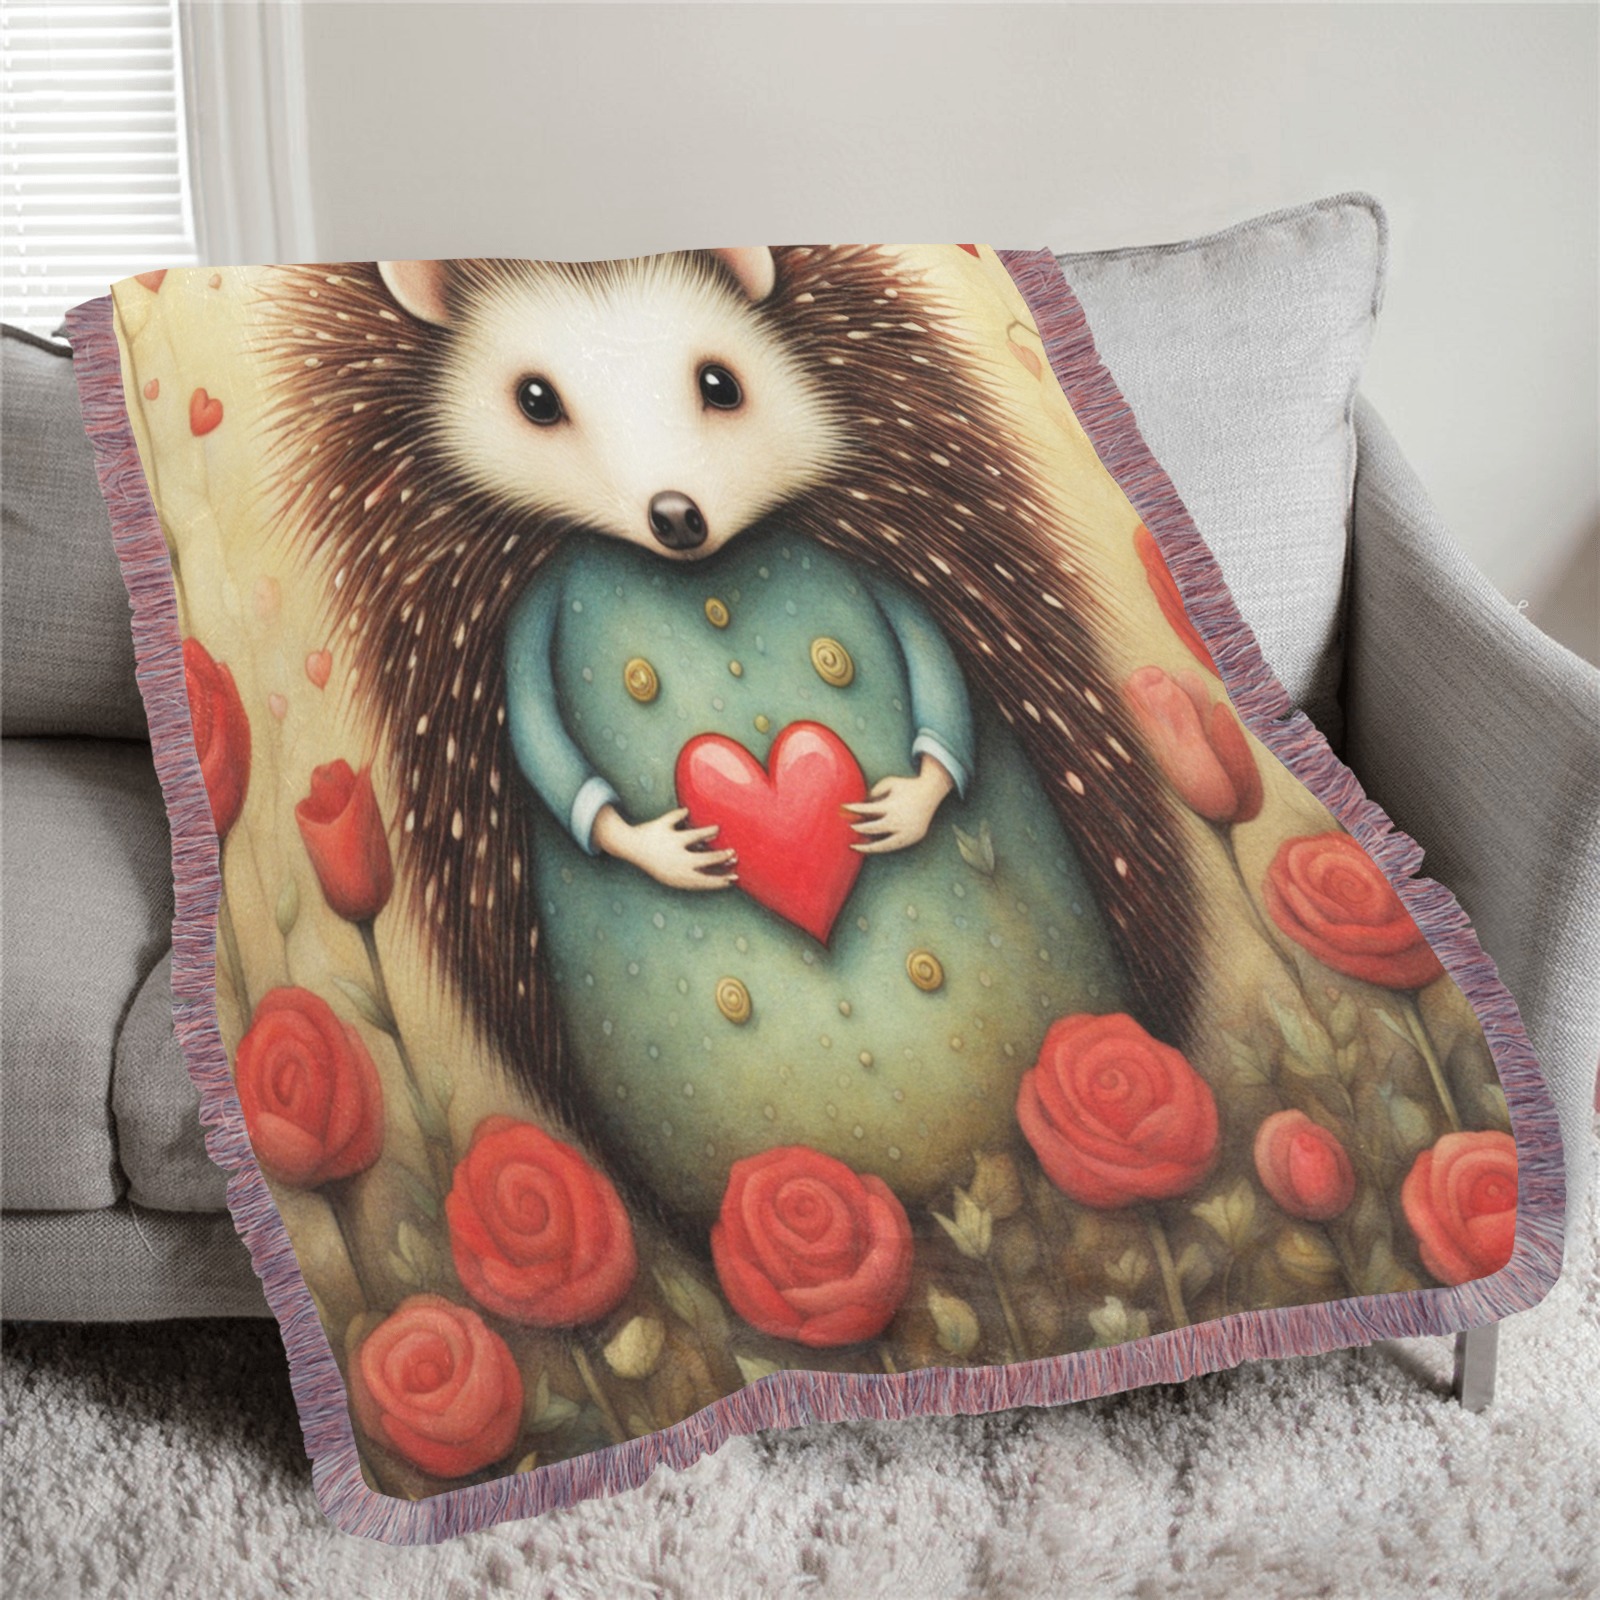 Hedgehog Love 2 Ultra-Soft Fringe Blanket 40"x50" (Mixed Pink)